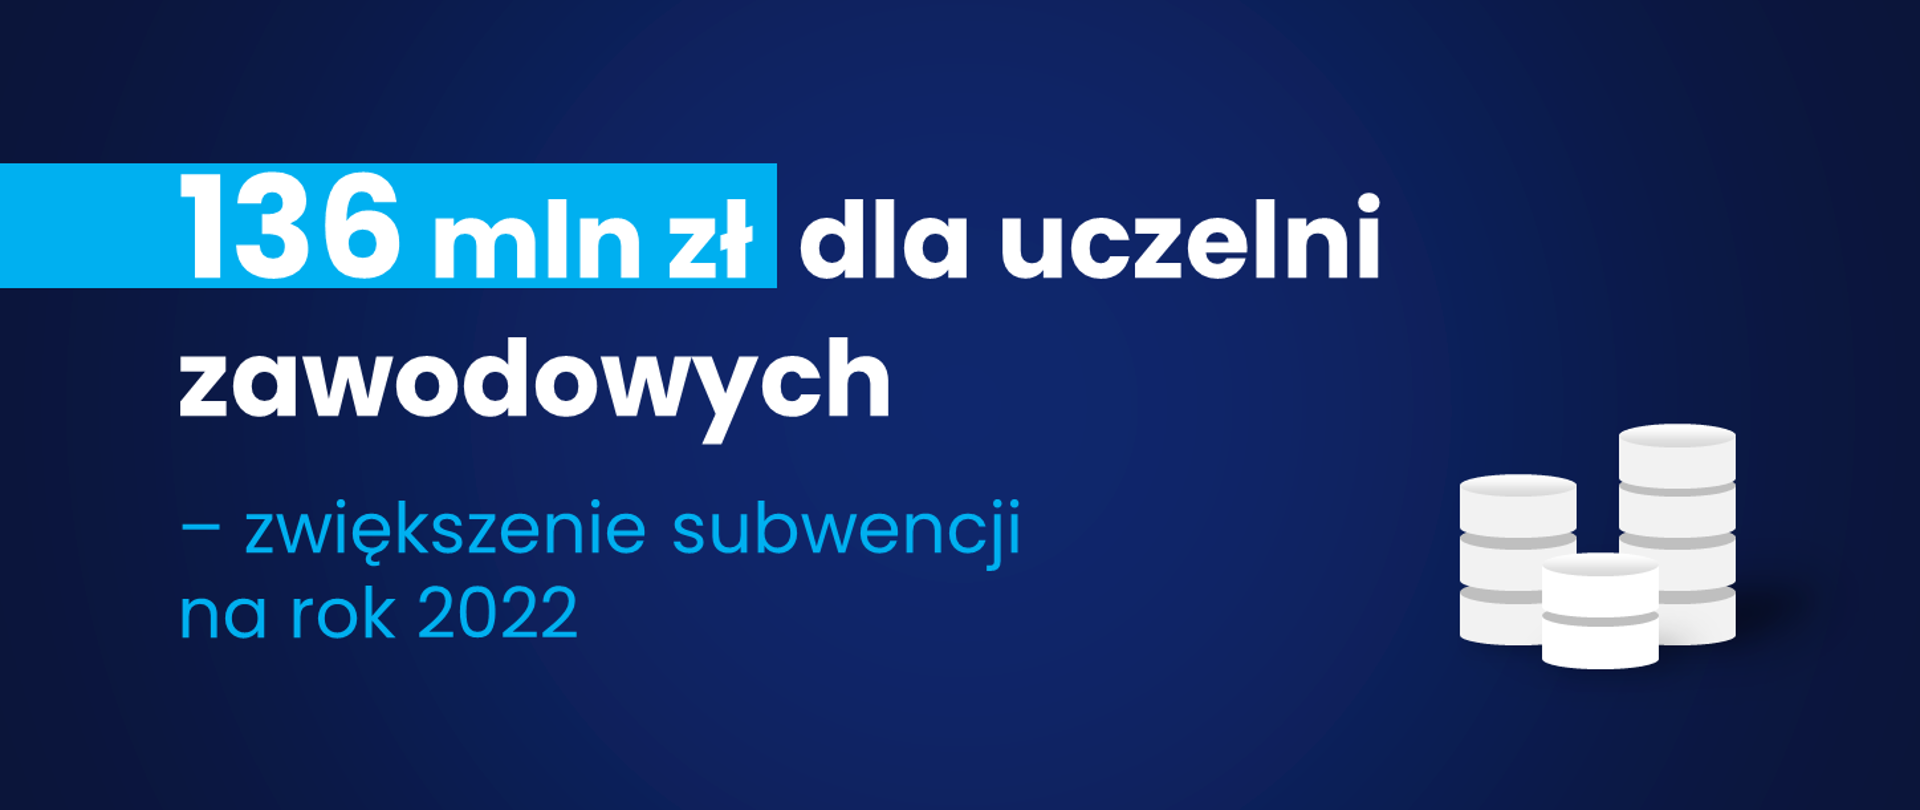 Grafika - na niebieskim tle napis 136 mln zł dla uczelni zawodowych - zwiększenie subwencji na rok 2022.